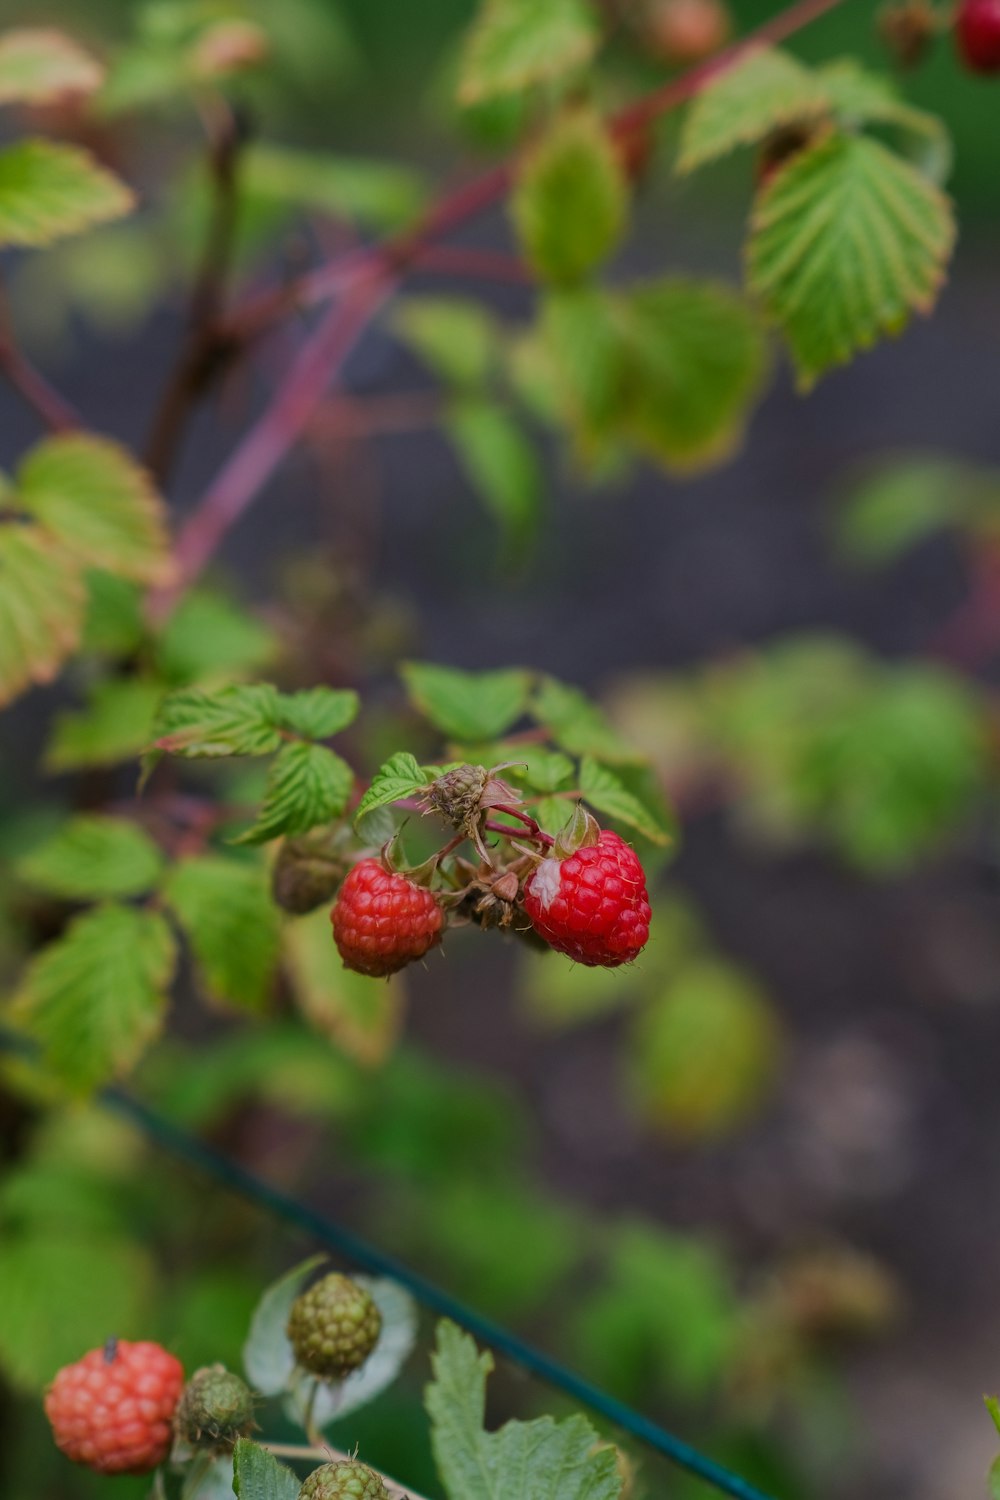 raspberries growing on a bush in a garden